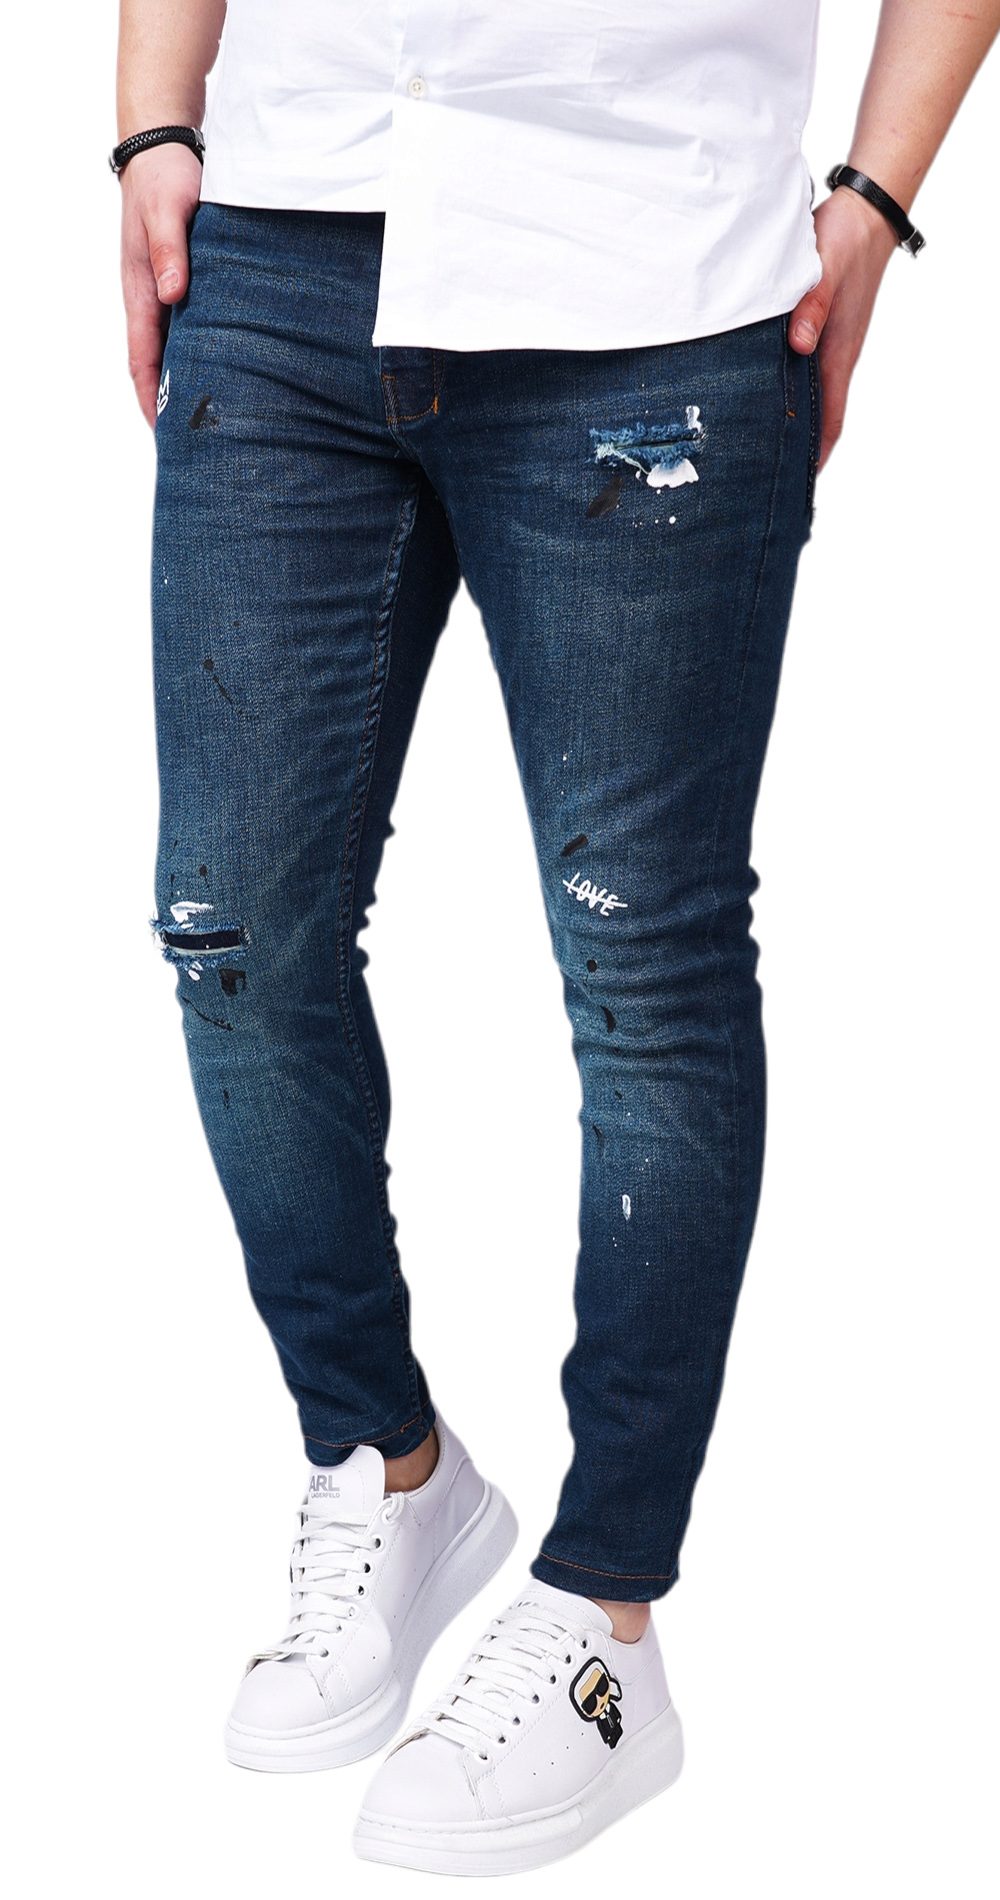 Jeans stretch, cu tocituri si elemente handmade MJL6120